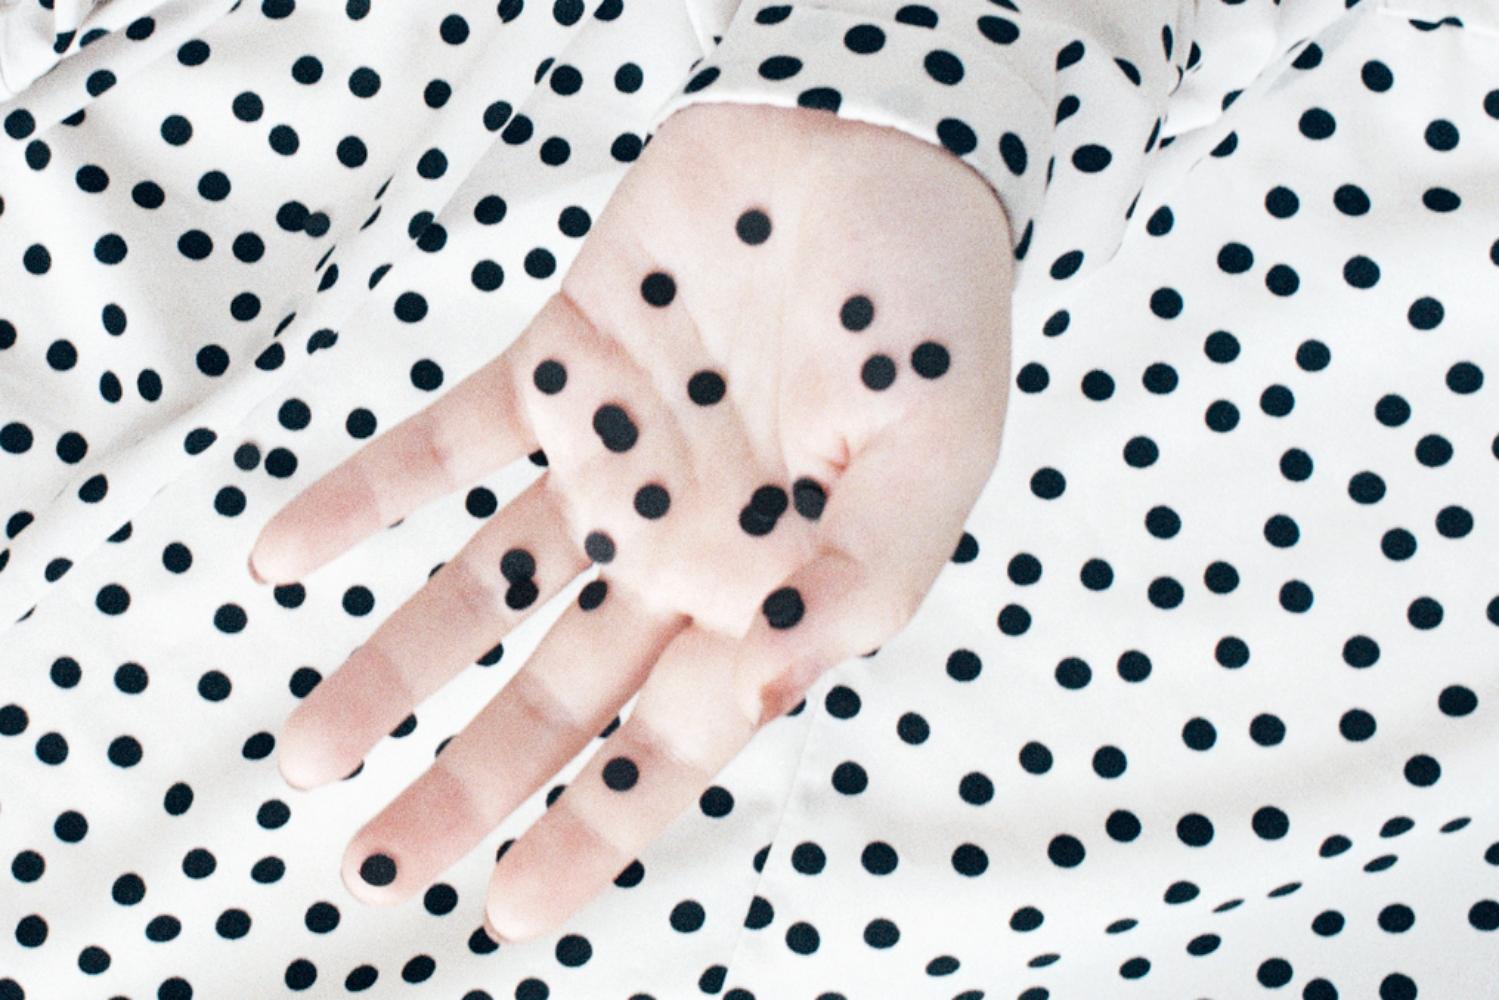 a dot dot dot – Ina Jang, Abstract, Minimalistic, Surrealism, Hands, Dots 4